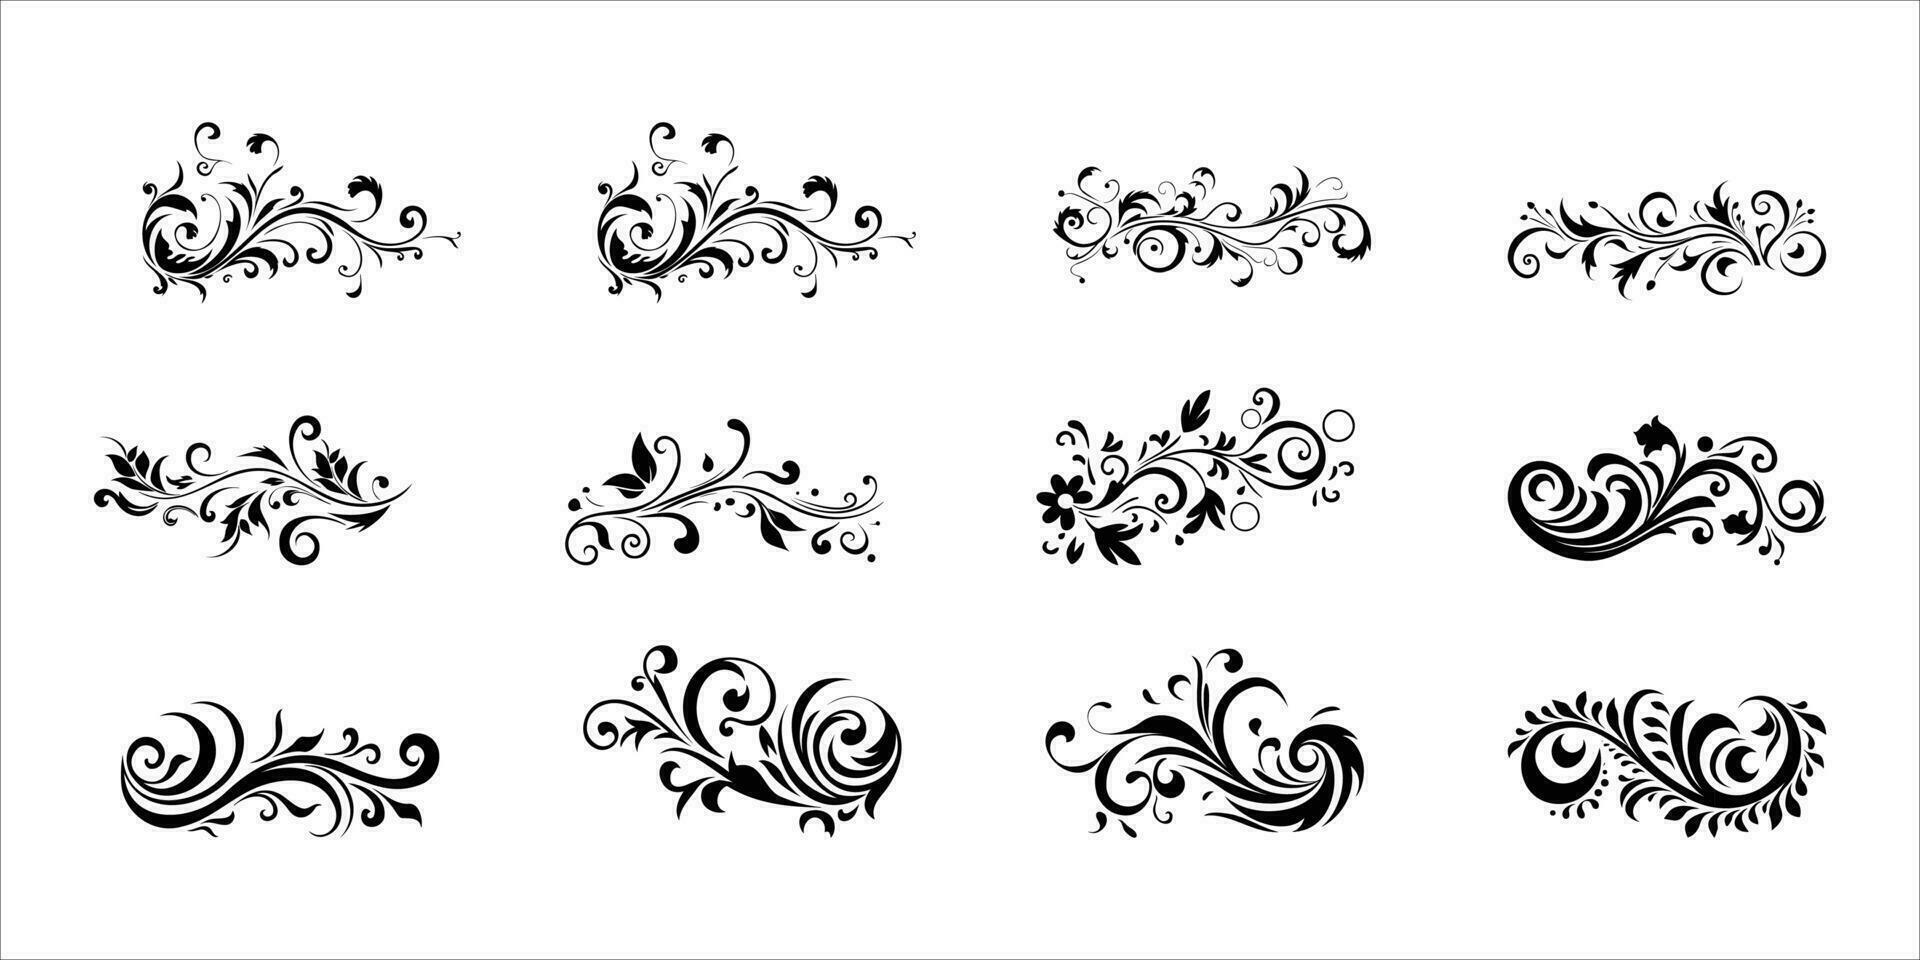 florido guión floral caligráfico colocar, decorativo y esmeradamente letrado vector